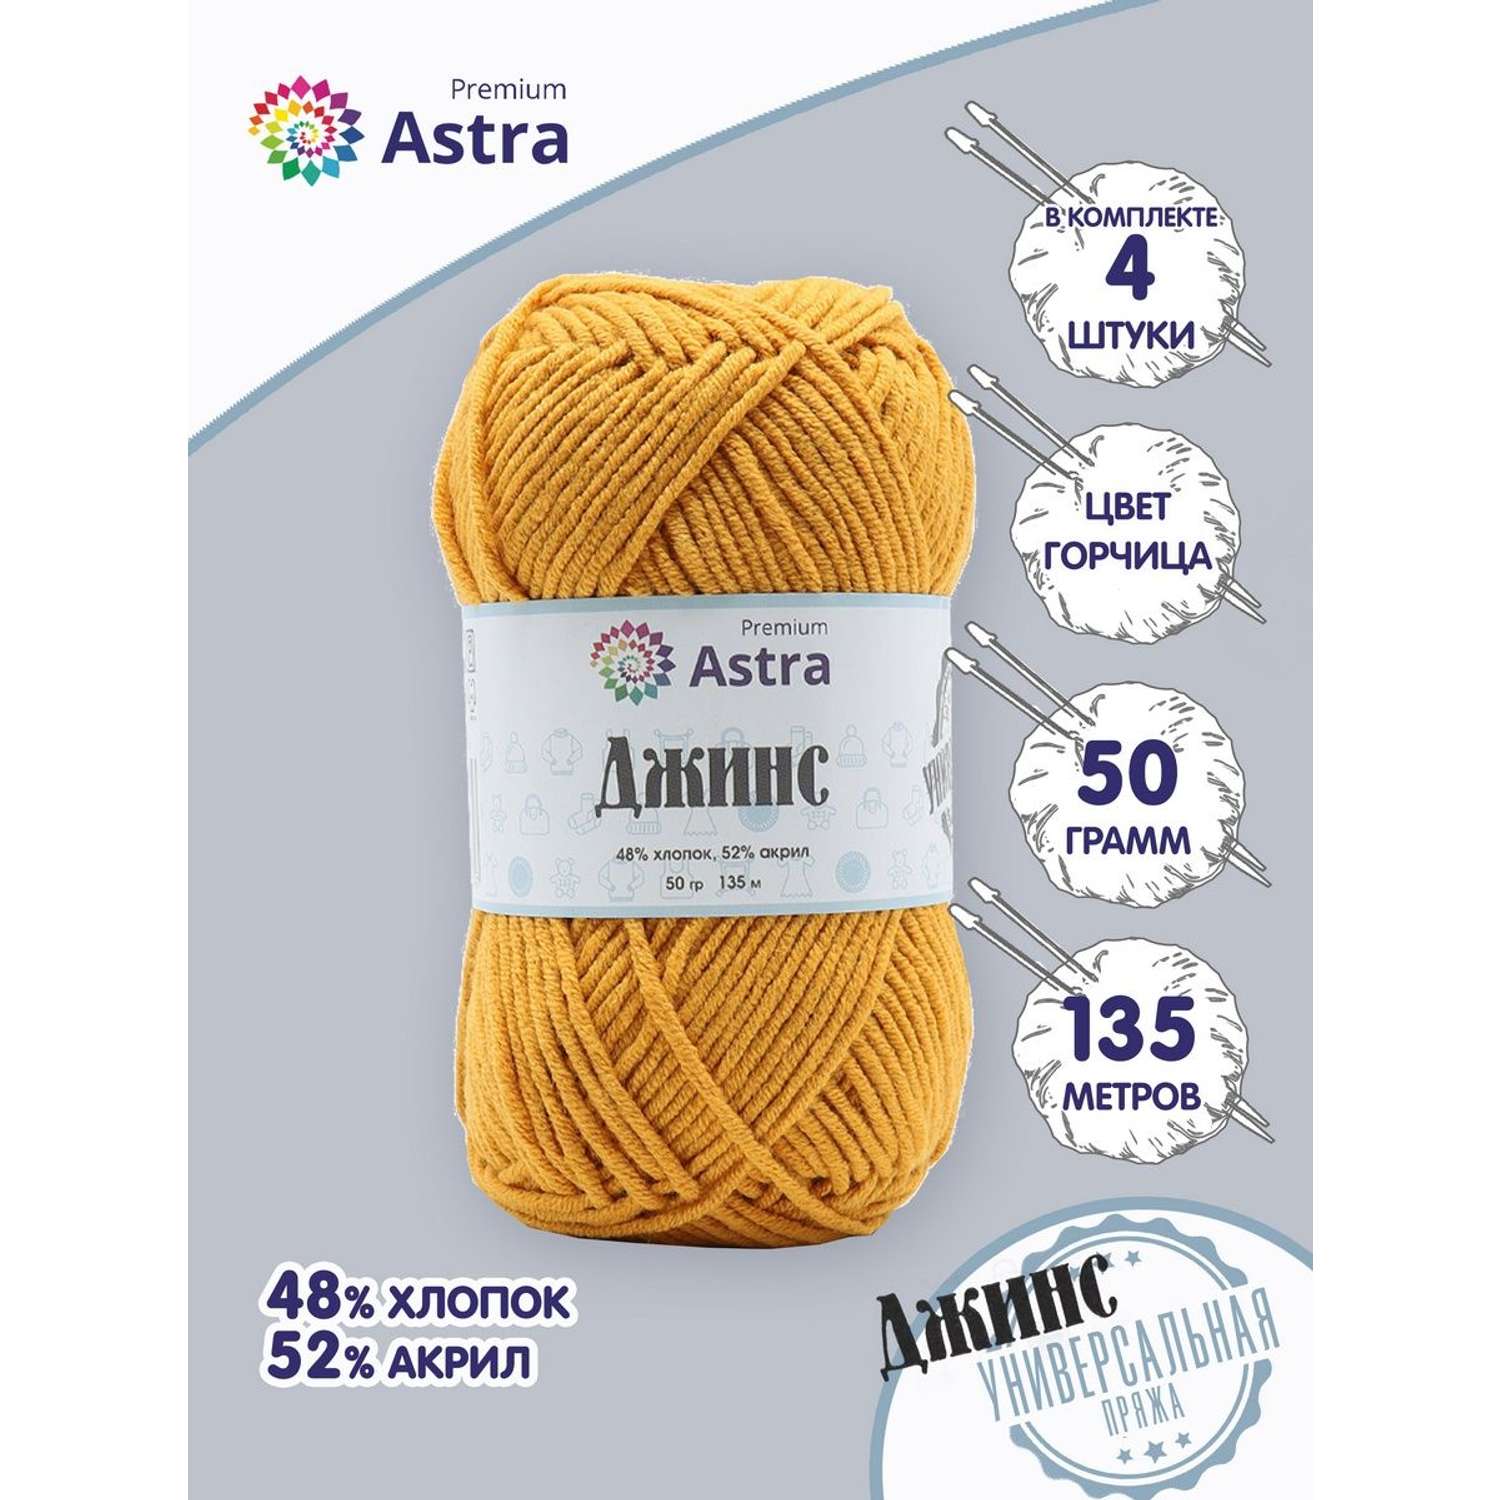 Пряжа для вязания Astra Premium джинс для повседневной одежды акрил хлопок 50 гр 135 м 390 горчица 4 мотка - фото 1